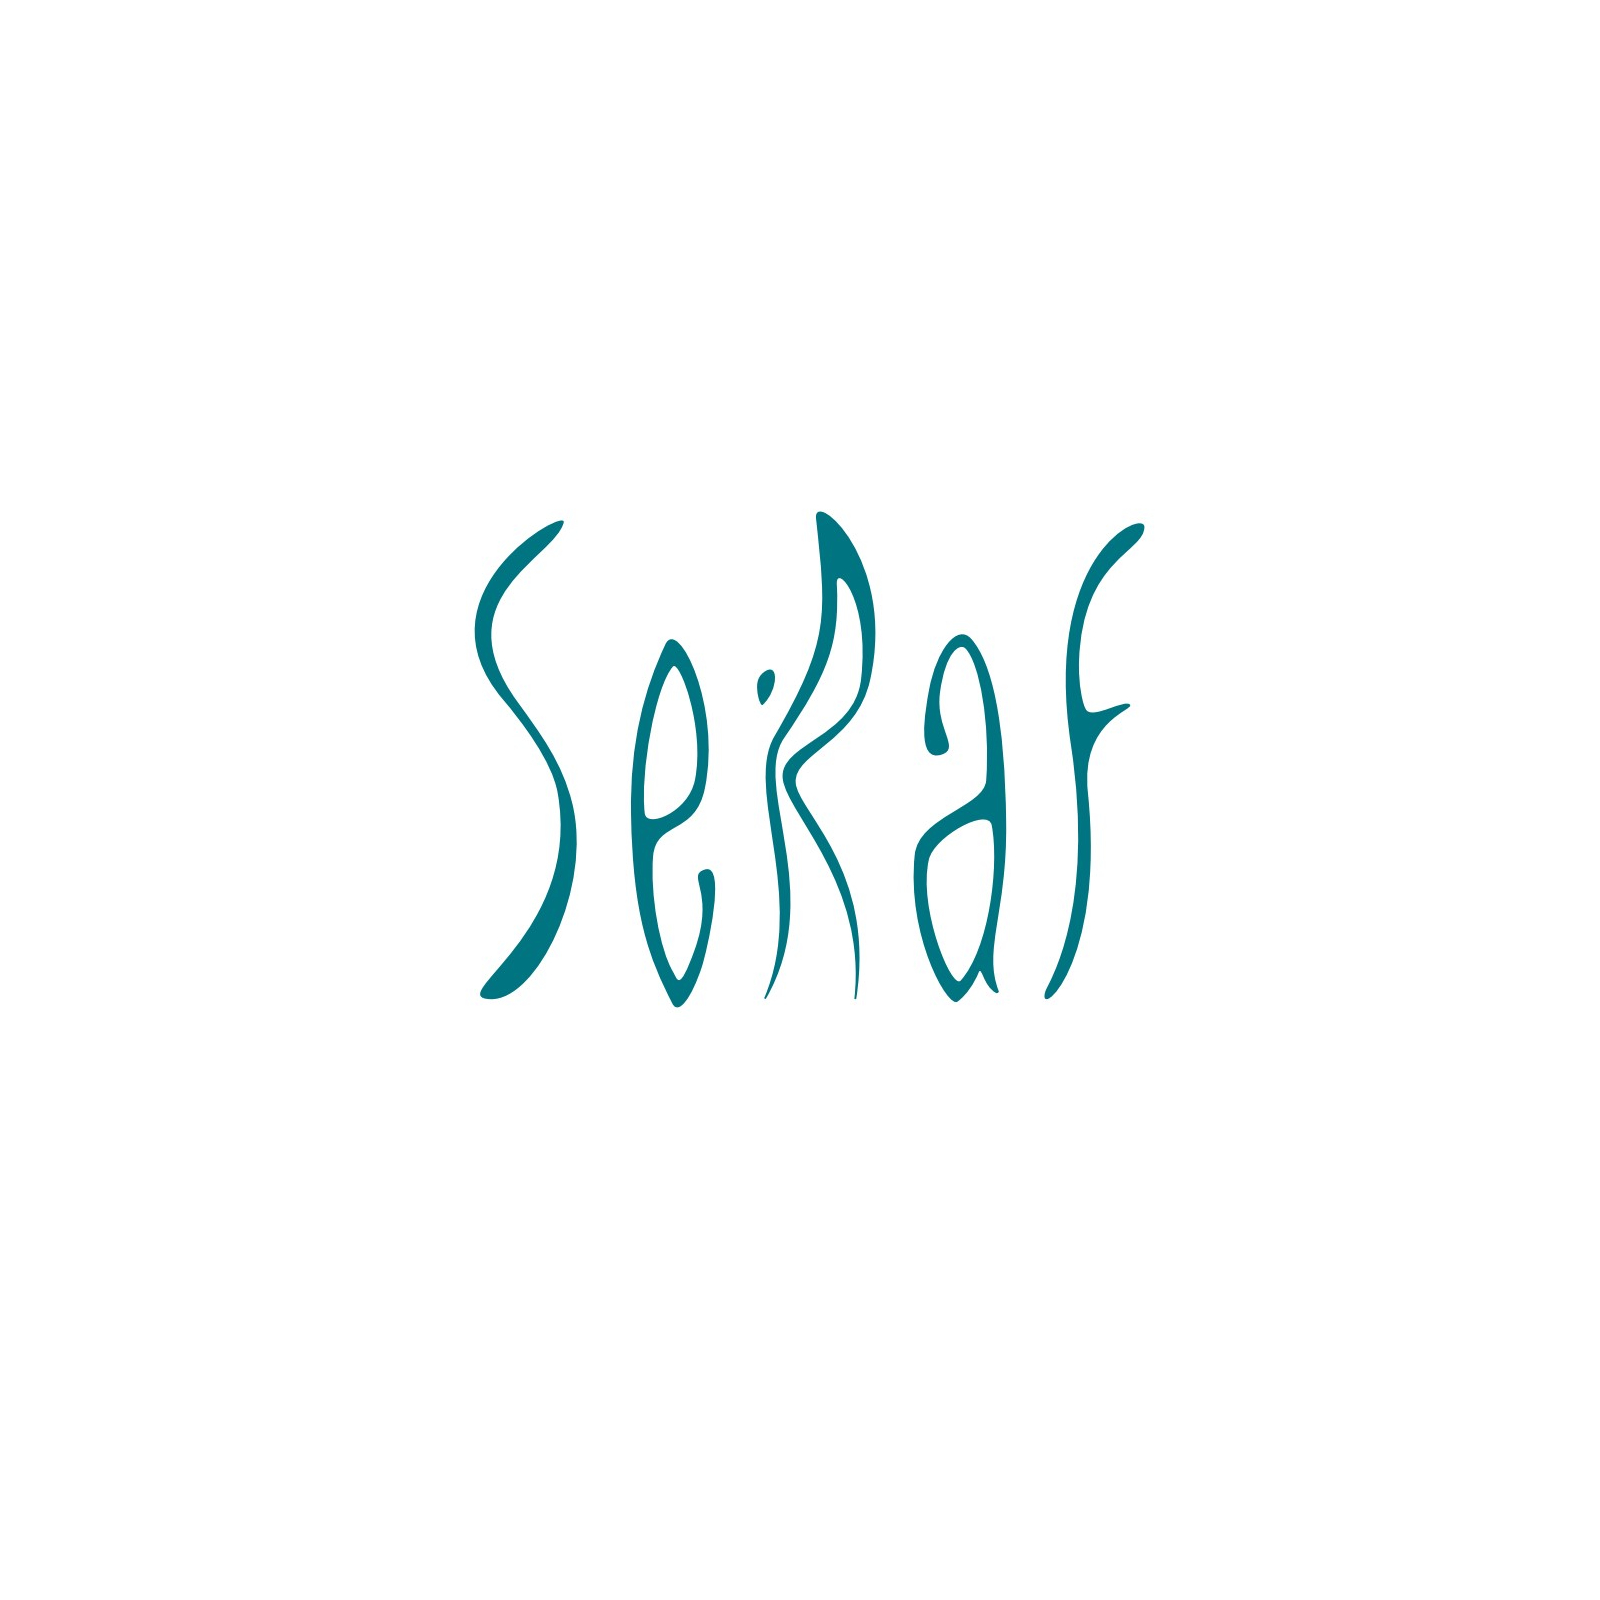 Seraf